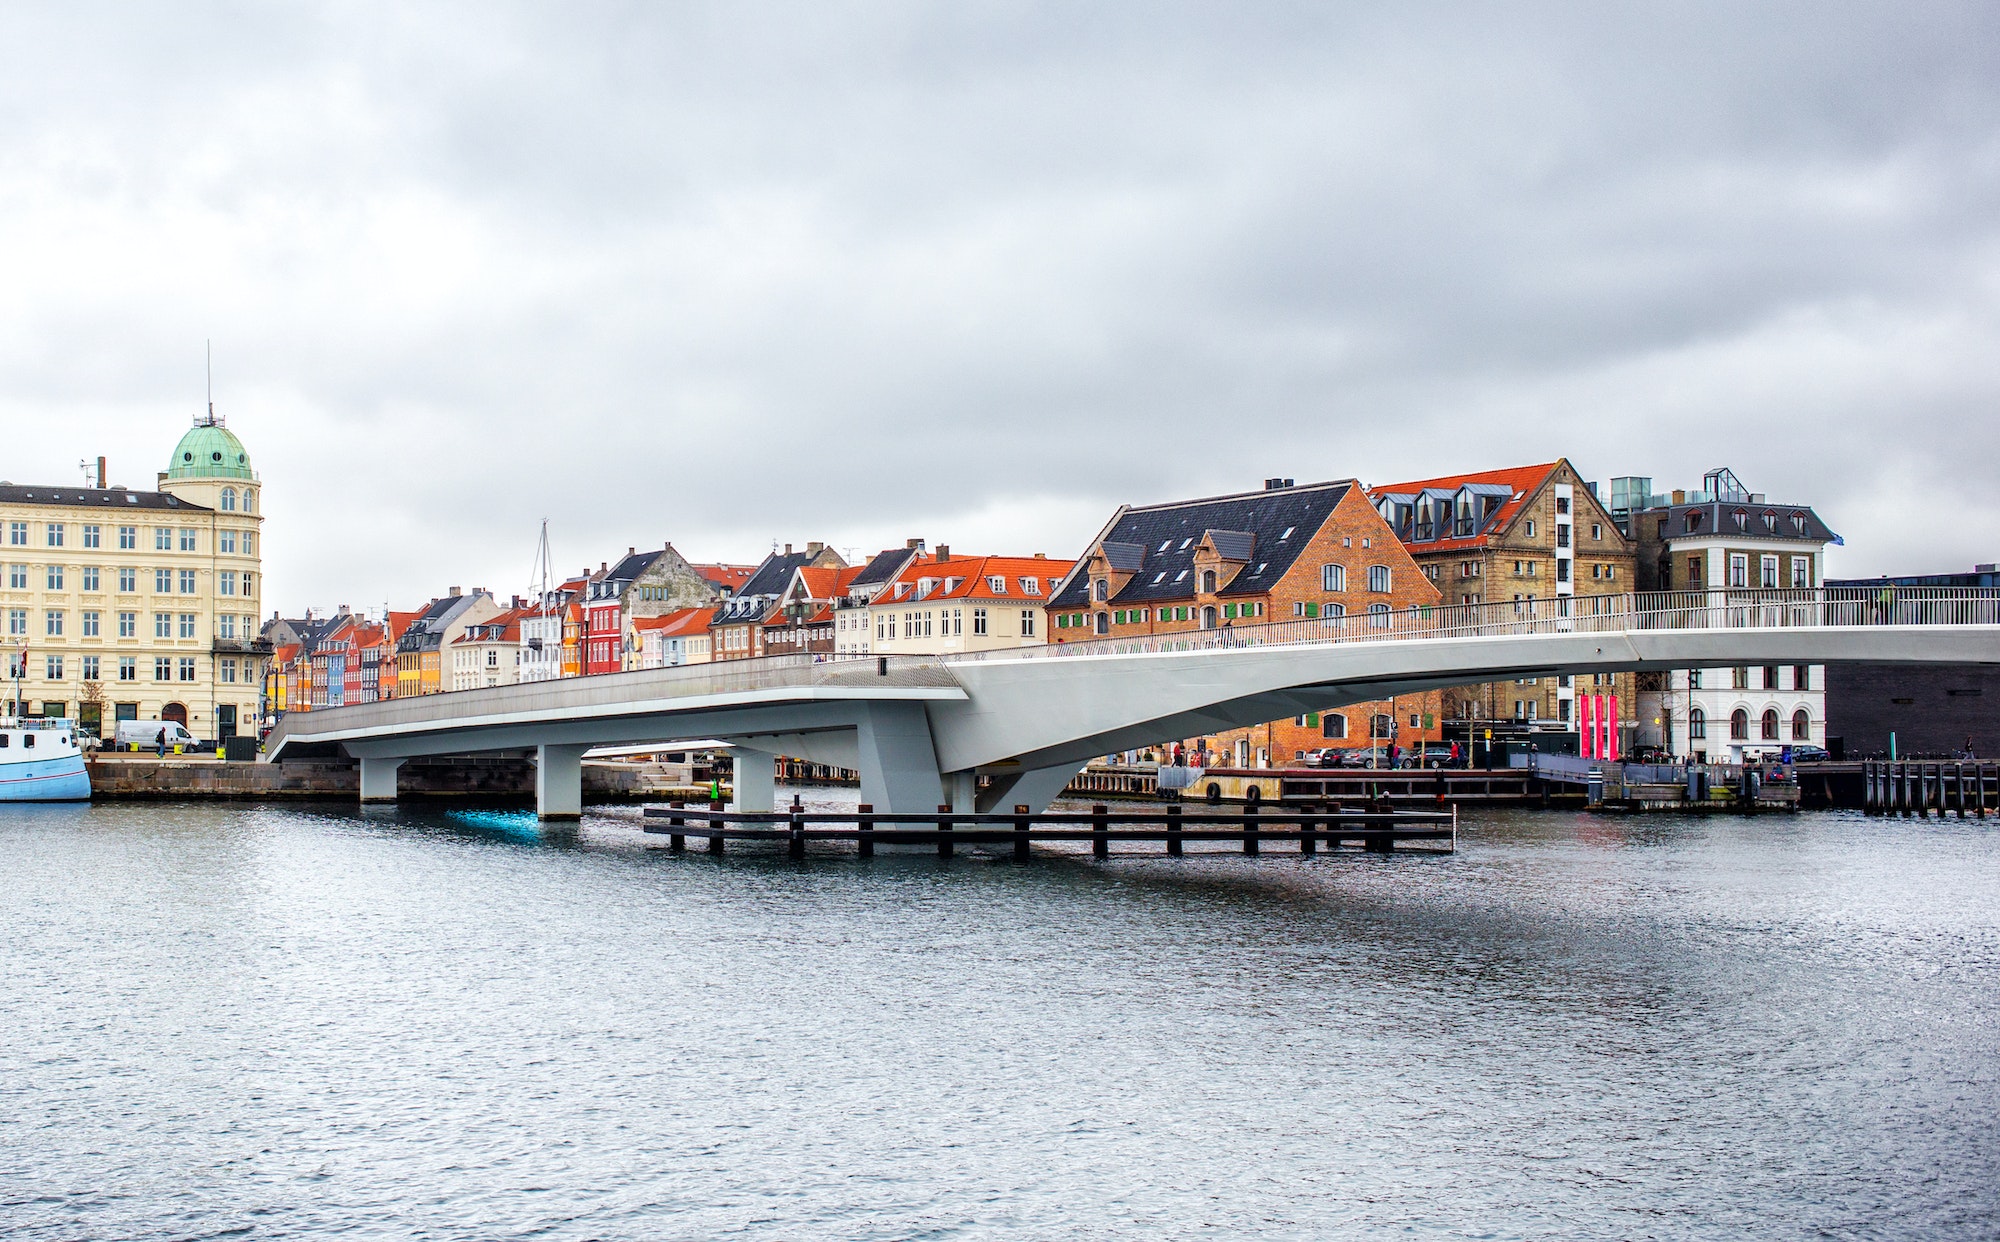 Inderhavnsbroen bridge in Copenhagen